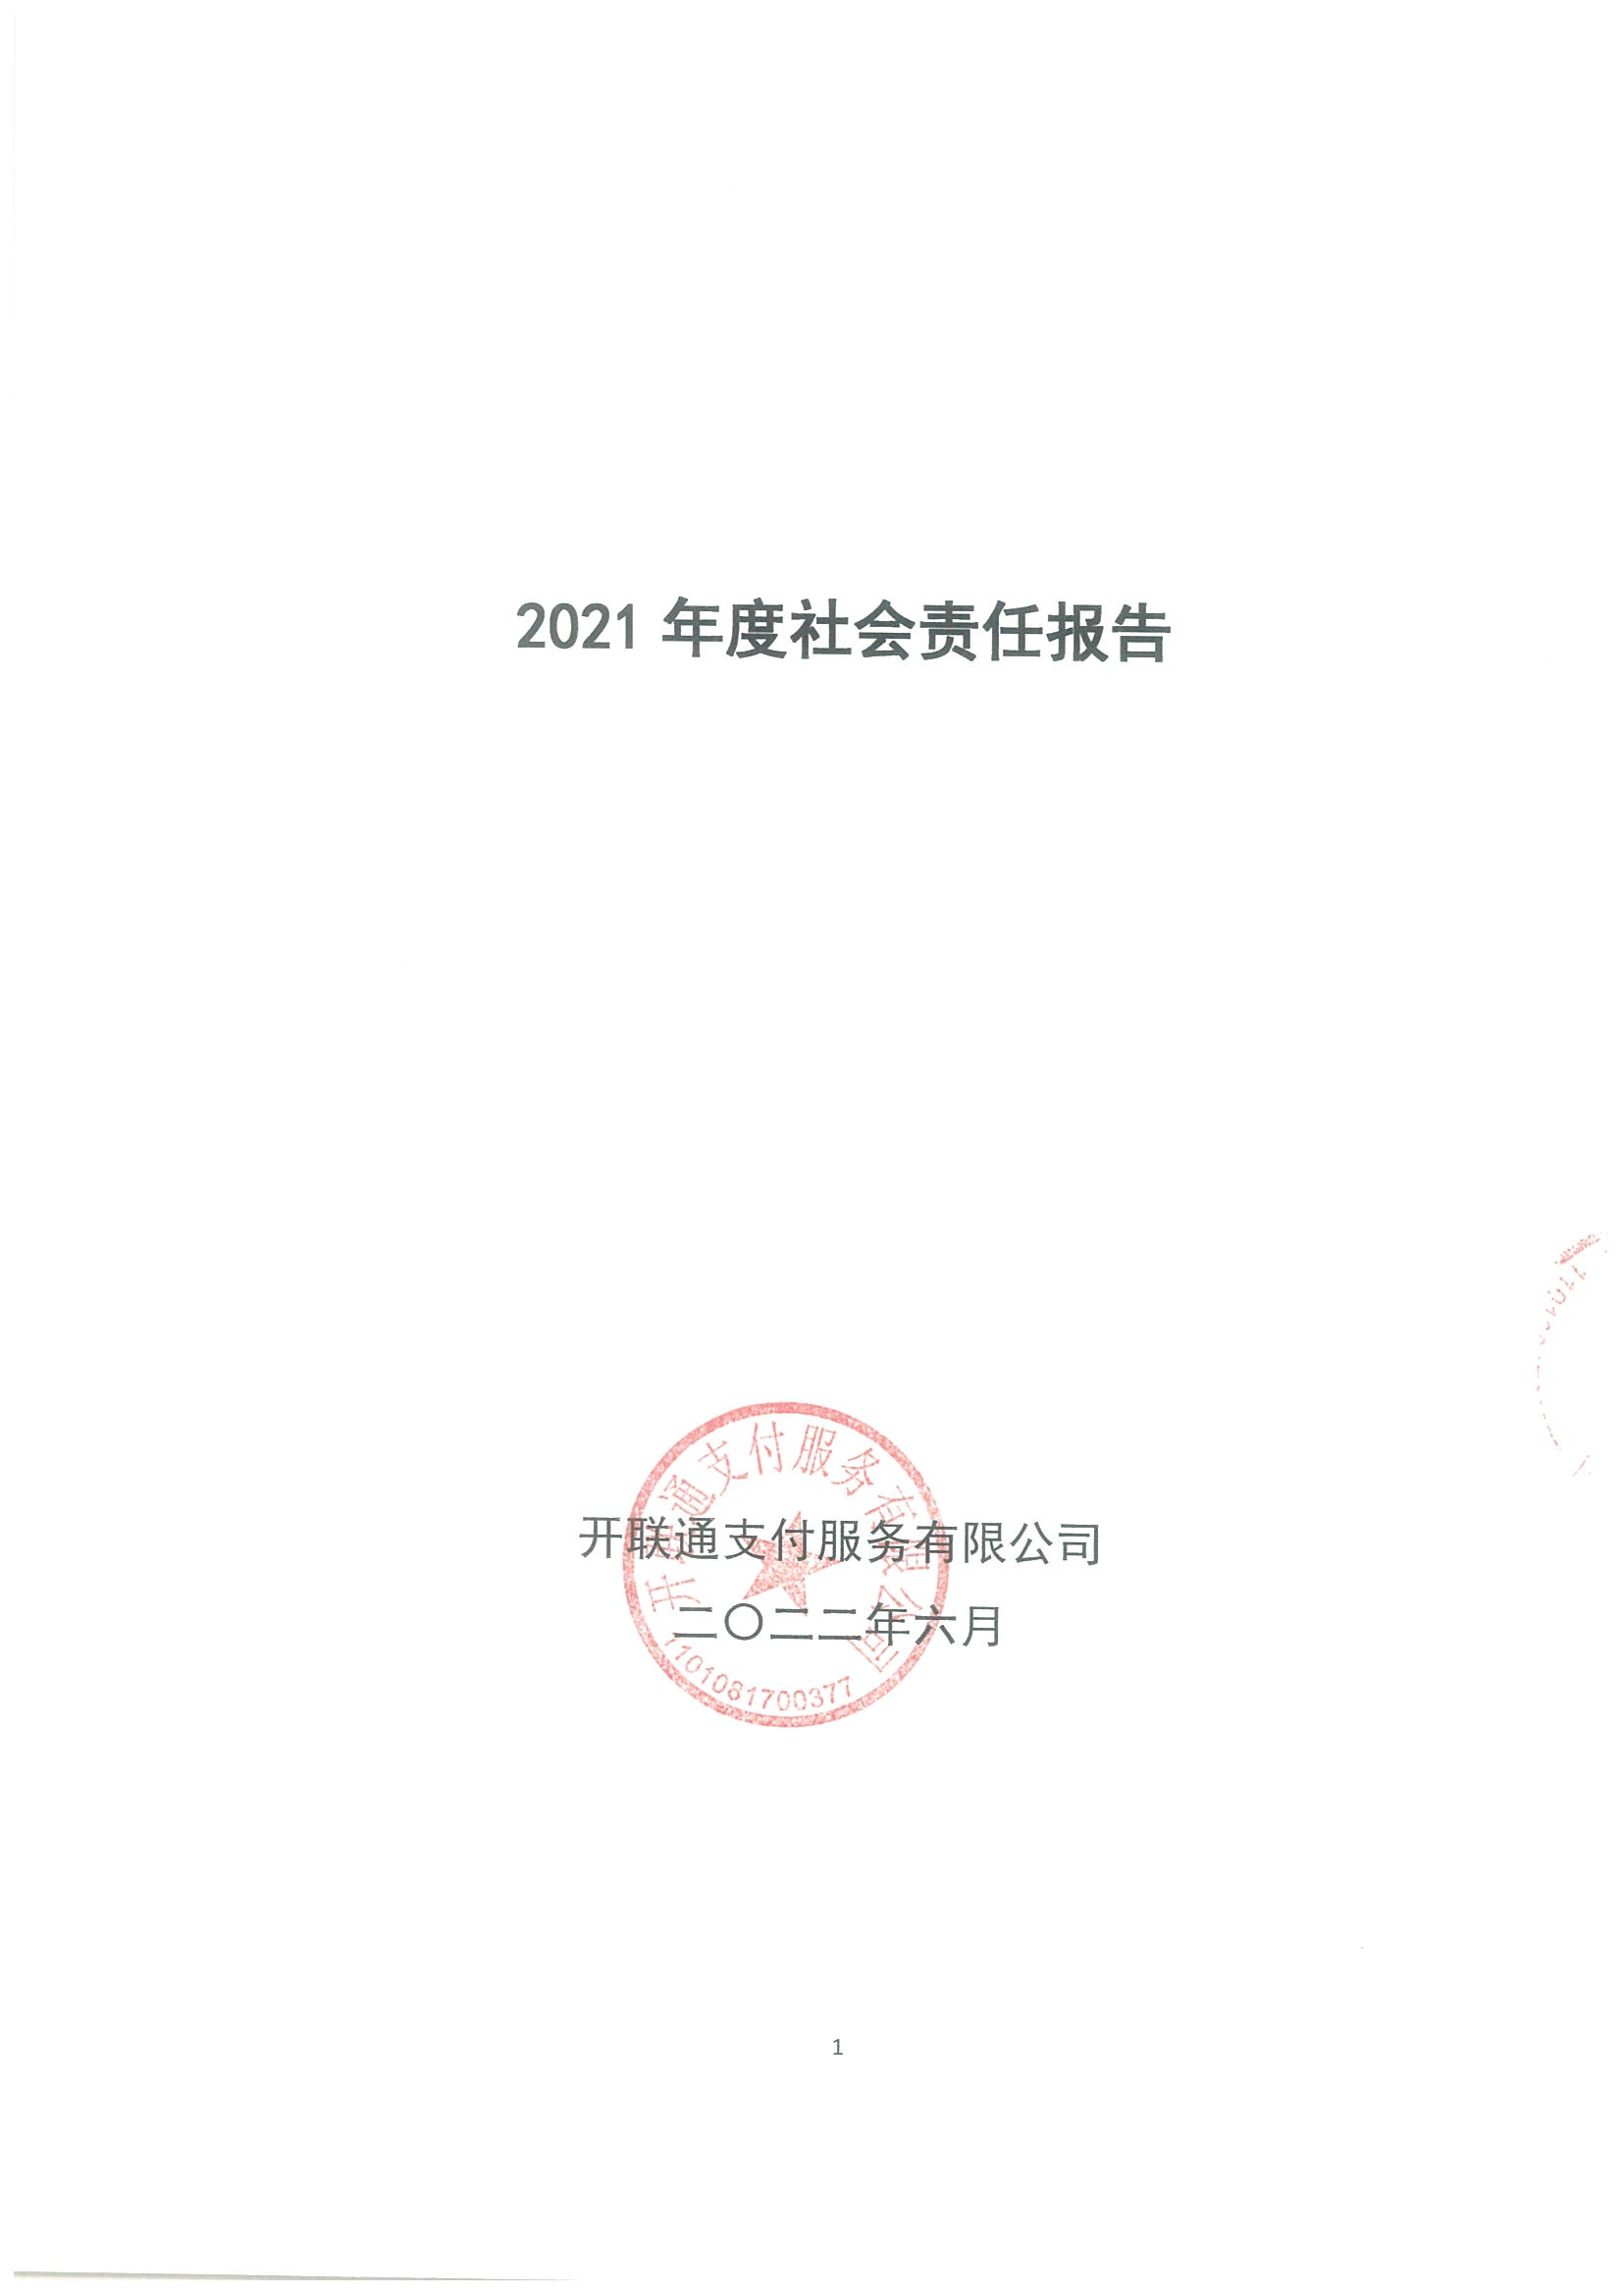 开联通2021年度社会责任报告_00.png